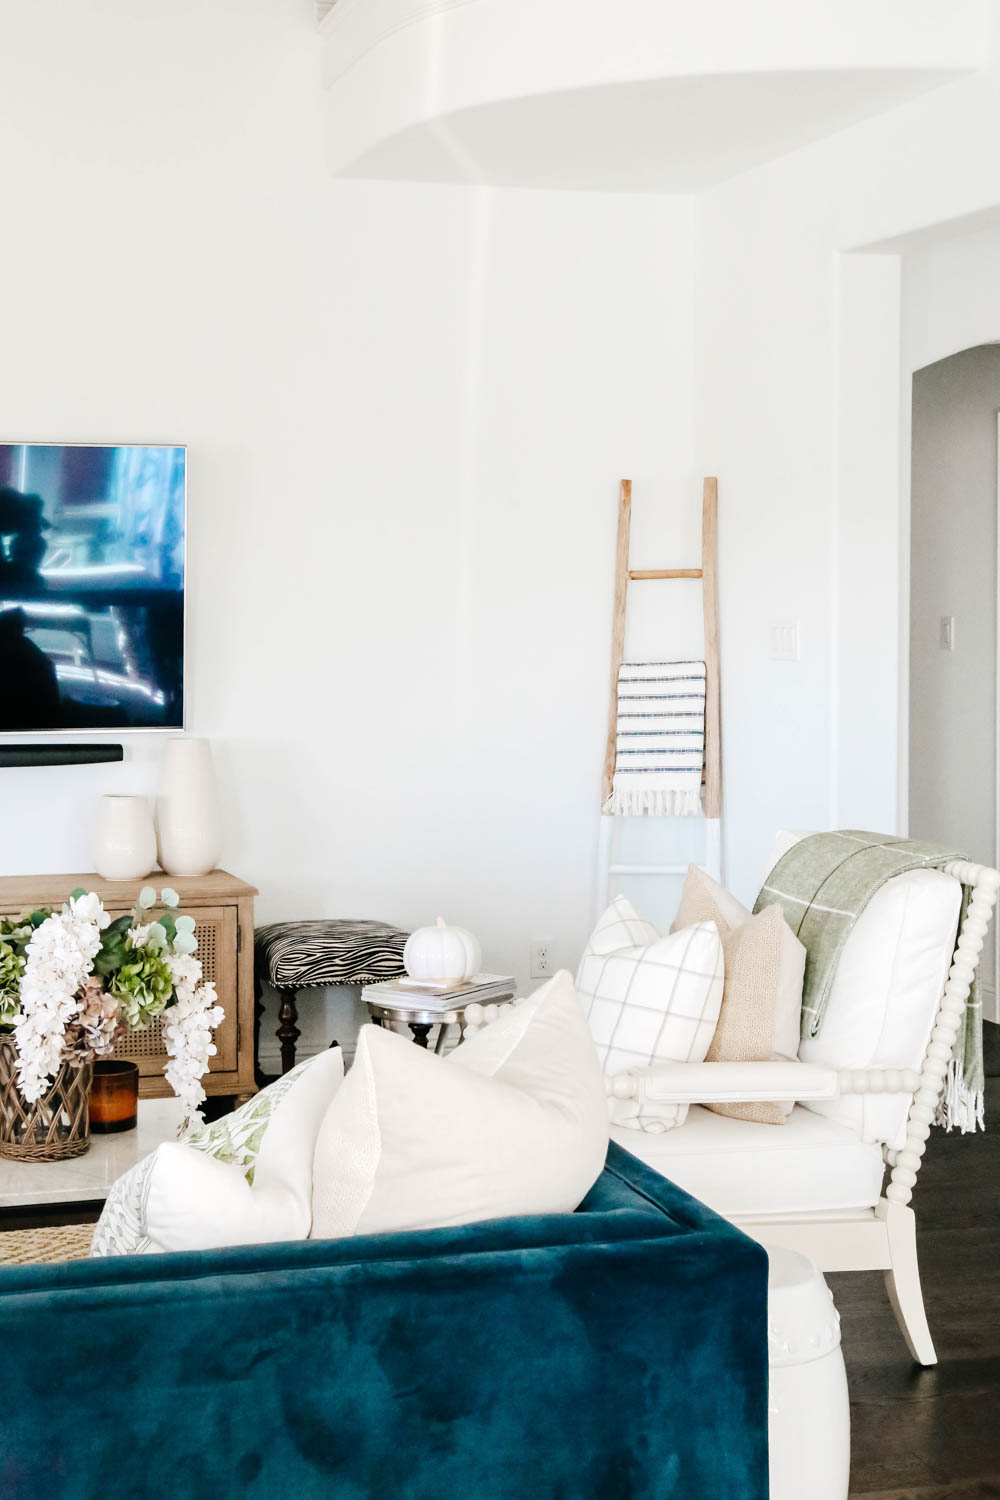 Farmhouse ladder, blanket holder, living room ideas. #ABlissfulNest #homedecor #livingroom